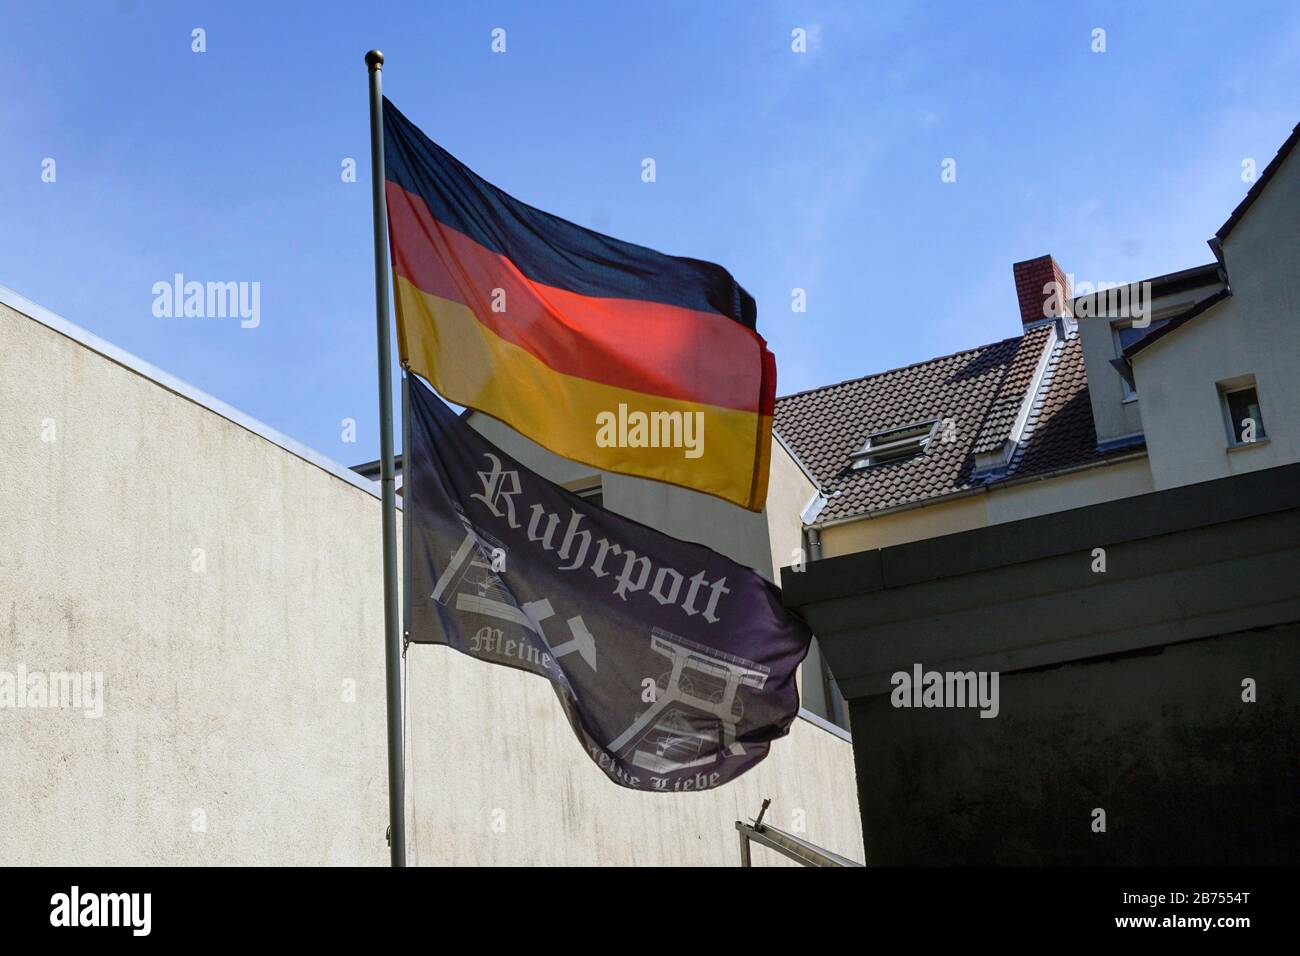 Am Fahnenmast eines Hauses in Herne hängen eine deutsche Fahne und eine Fahne mit dem Aufdruck "Ruhrpott". [Automatisierte Übersetzung] Stockfoto